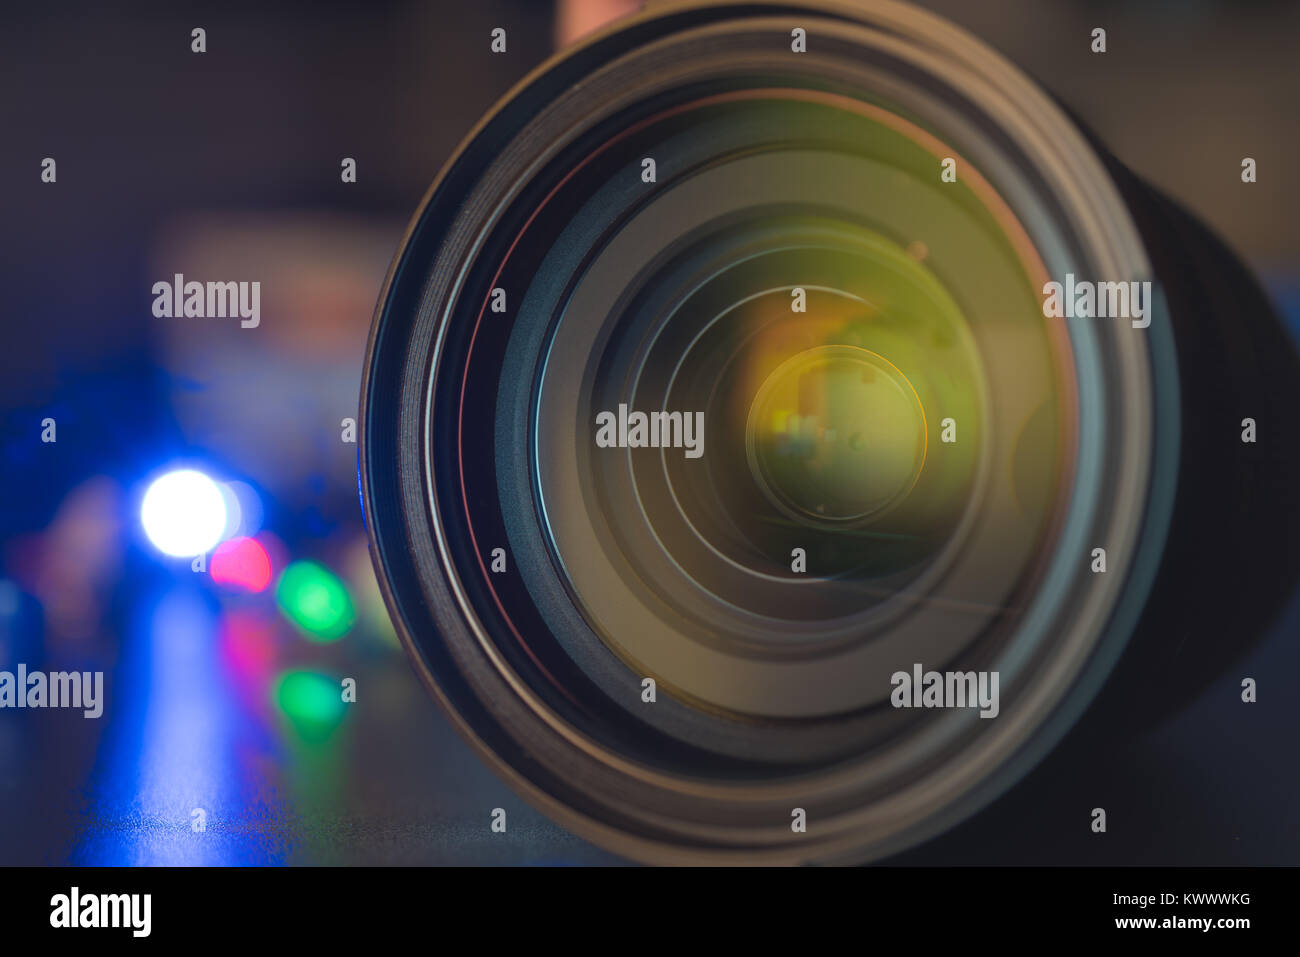 La photo ou caméra vidéo lens sur fond sombre avec des reflets d'objectif Banque D'Images